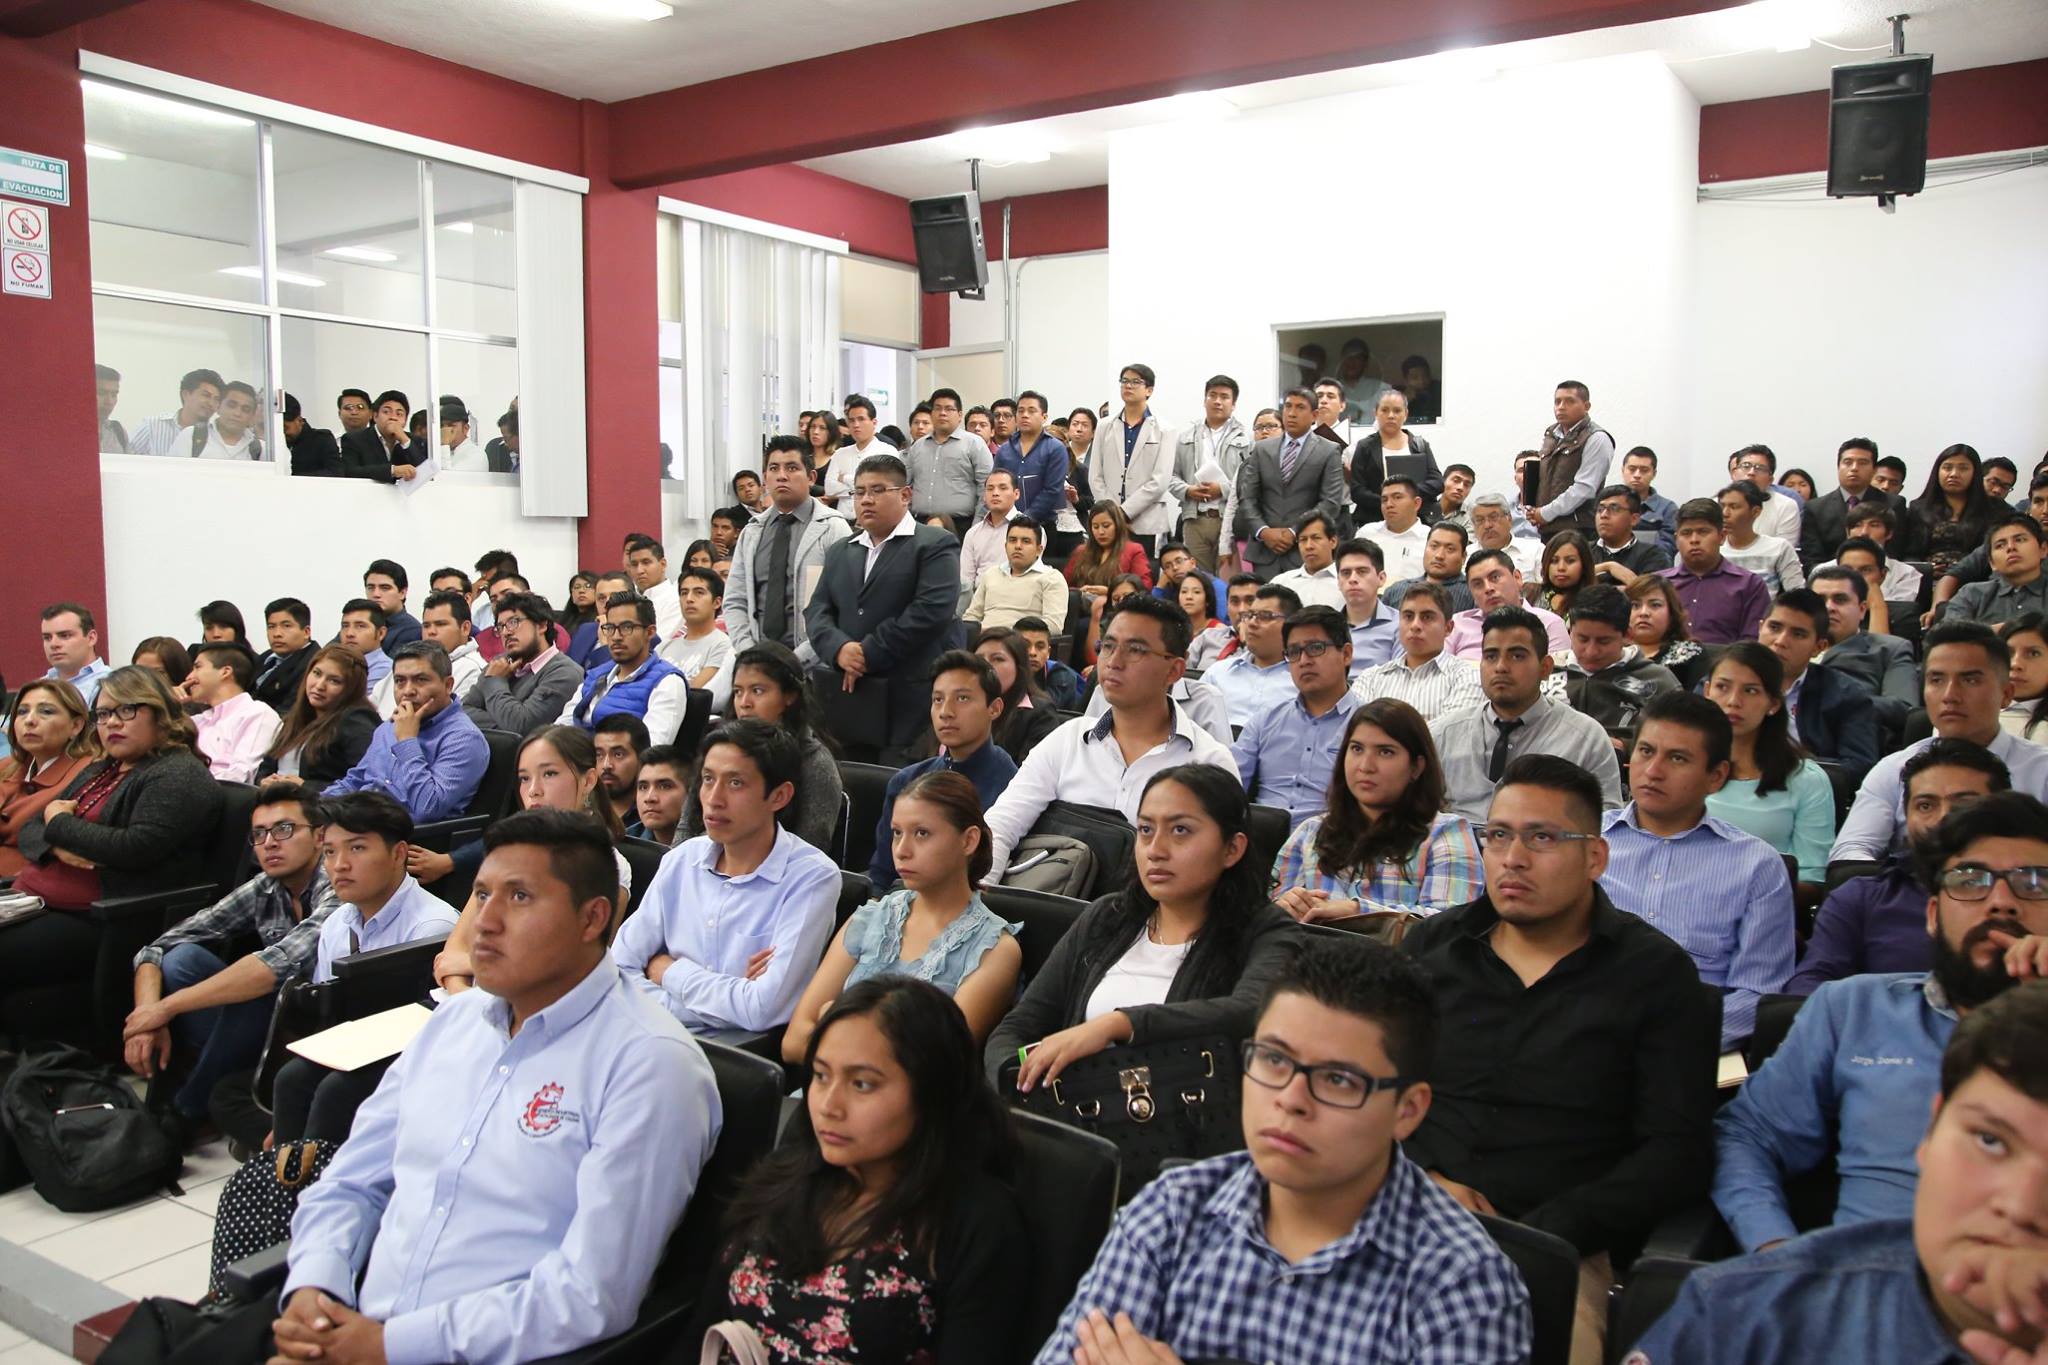 Anuncian llegada de nuevas empresas al municipio de Atlixco